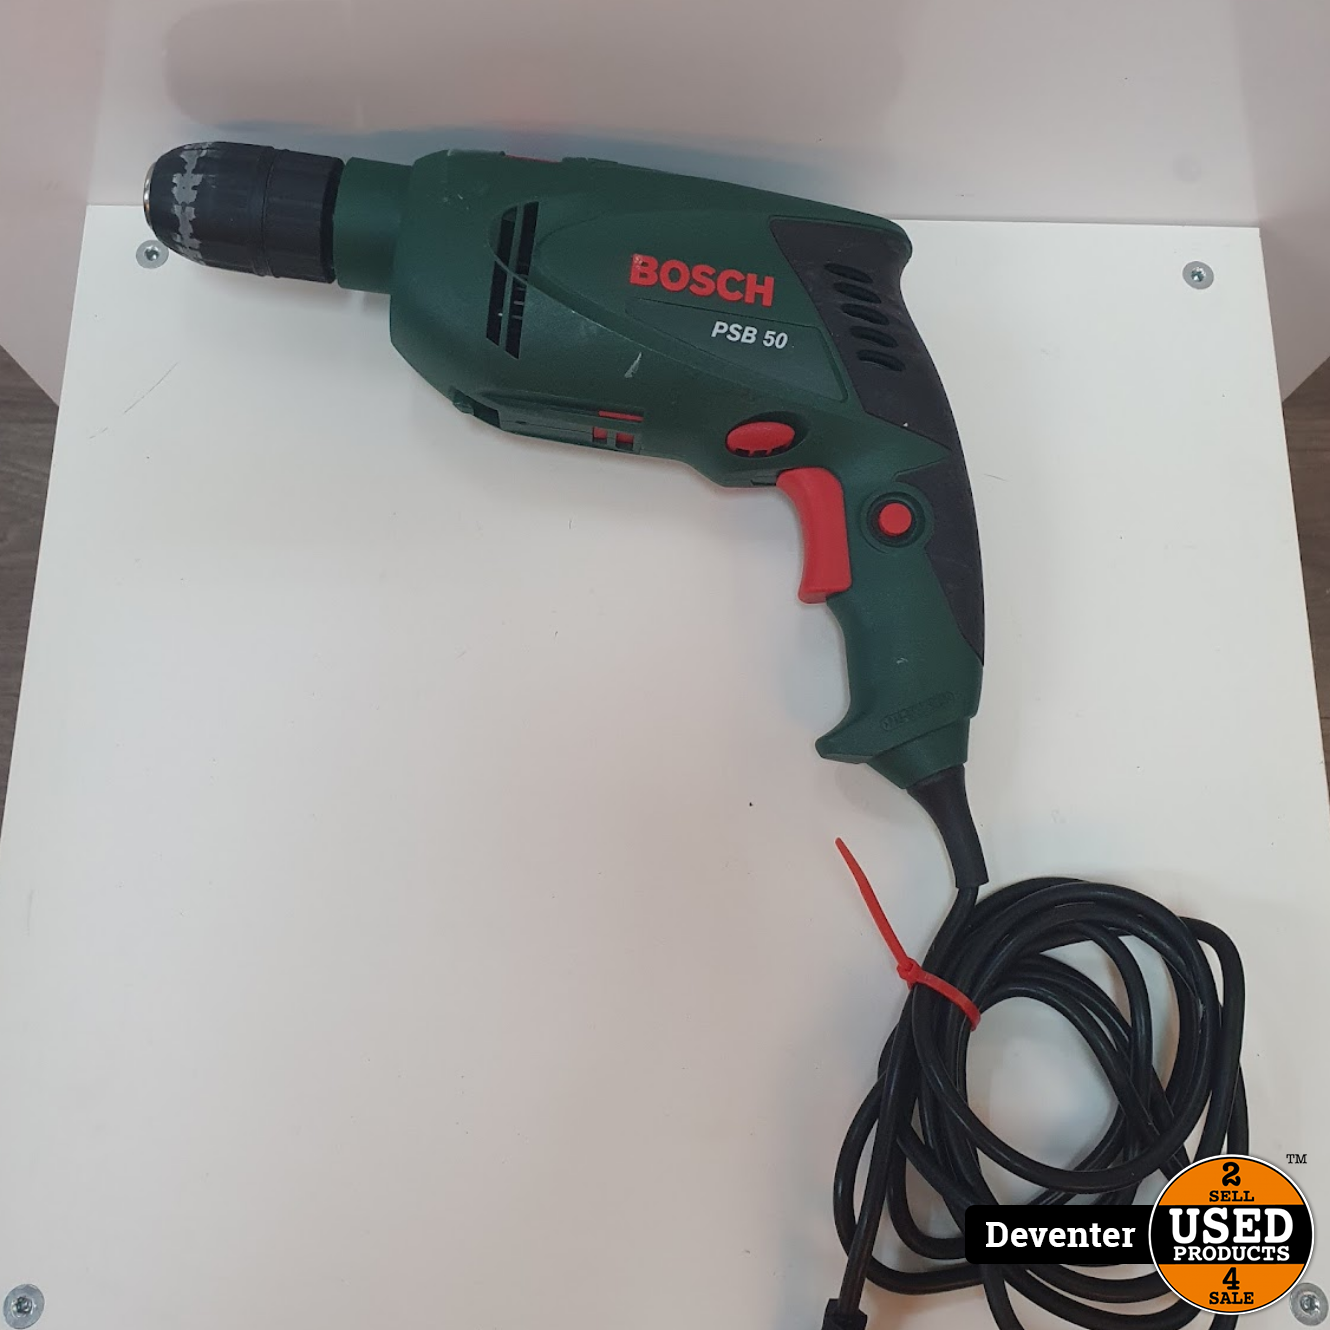 Voorzichtigheid Missie inkt Bosch PSB 50 Klopboor 500 watt Met garantie - Used Products Deventer